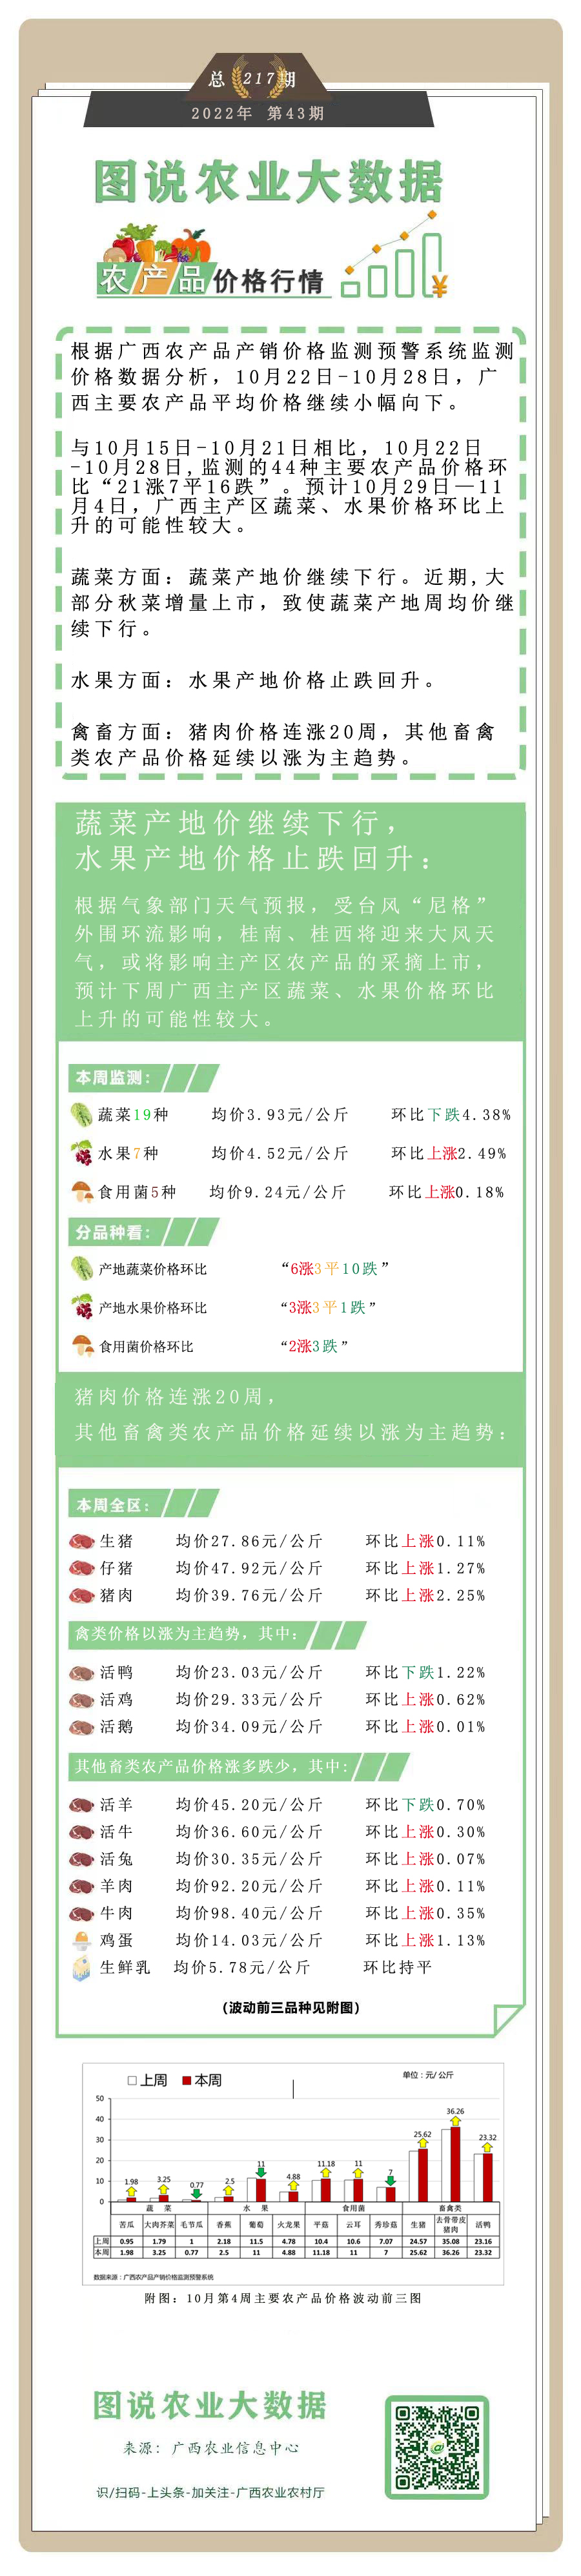 农业大数据丨广西农产品一周（10.22—10.28）价格行情